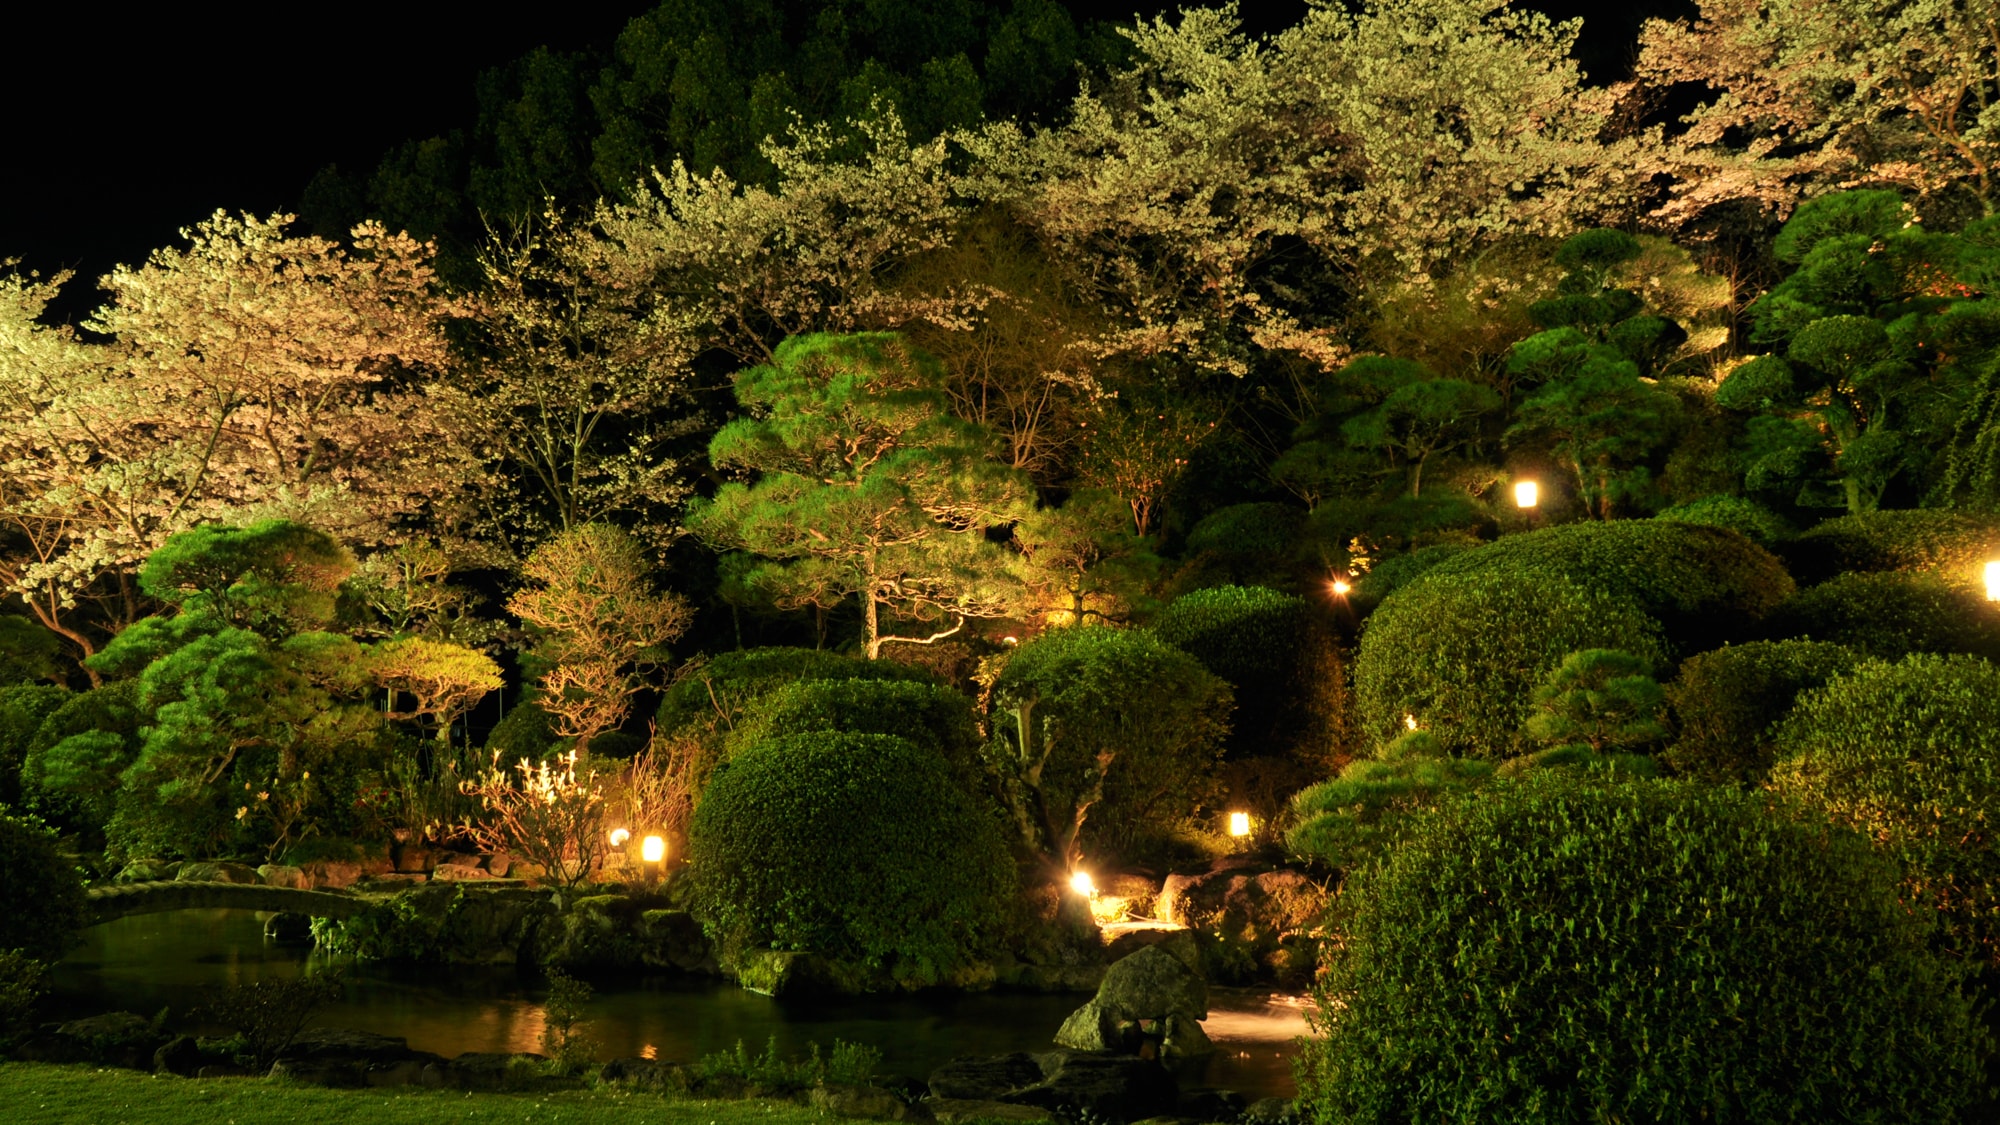 Illuminated night garden